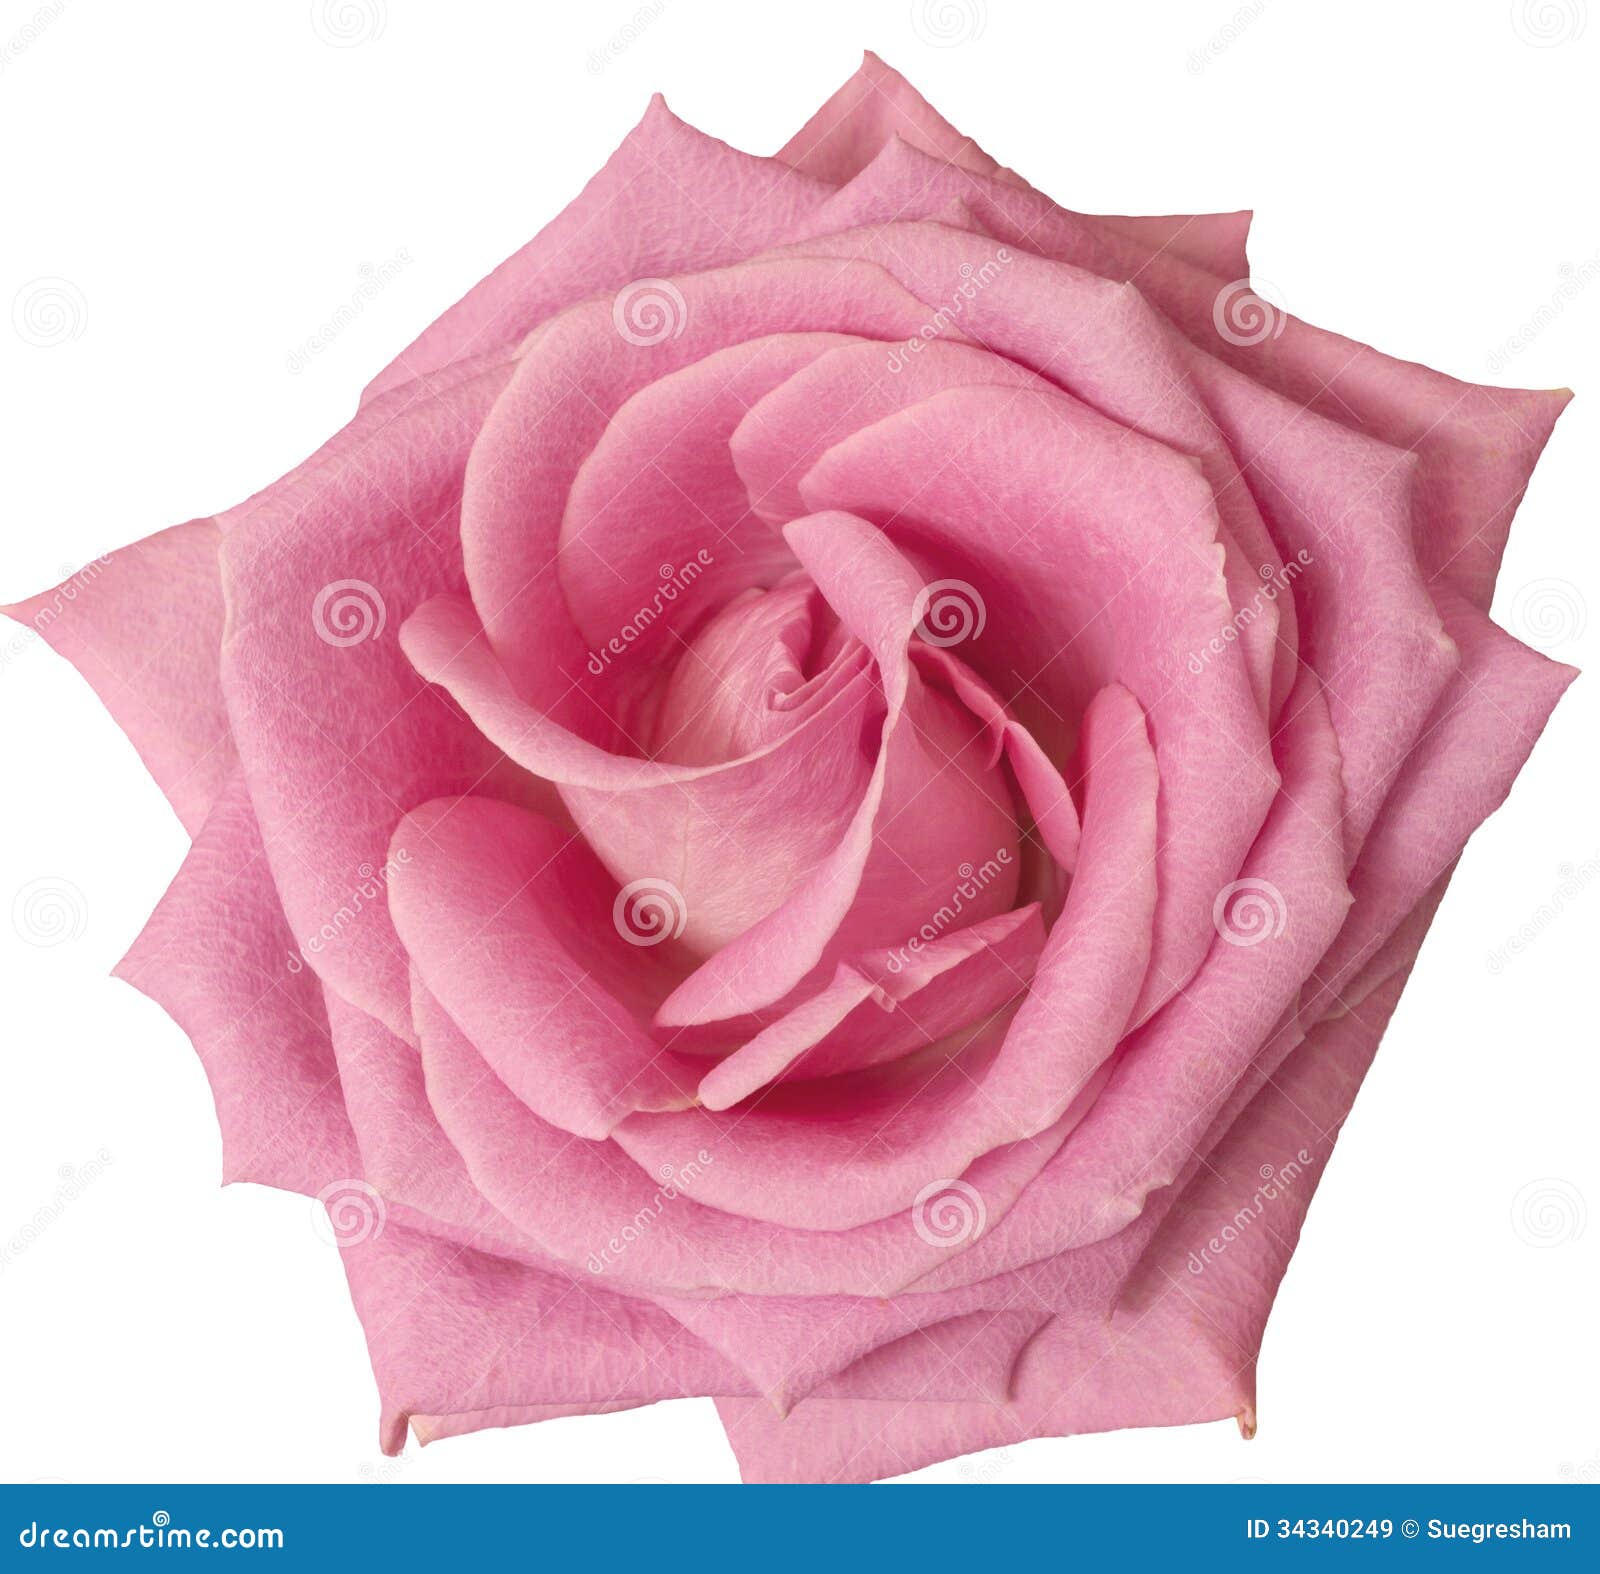 Single Hot Pink Rose